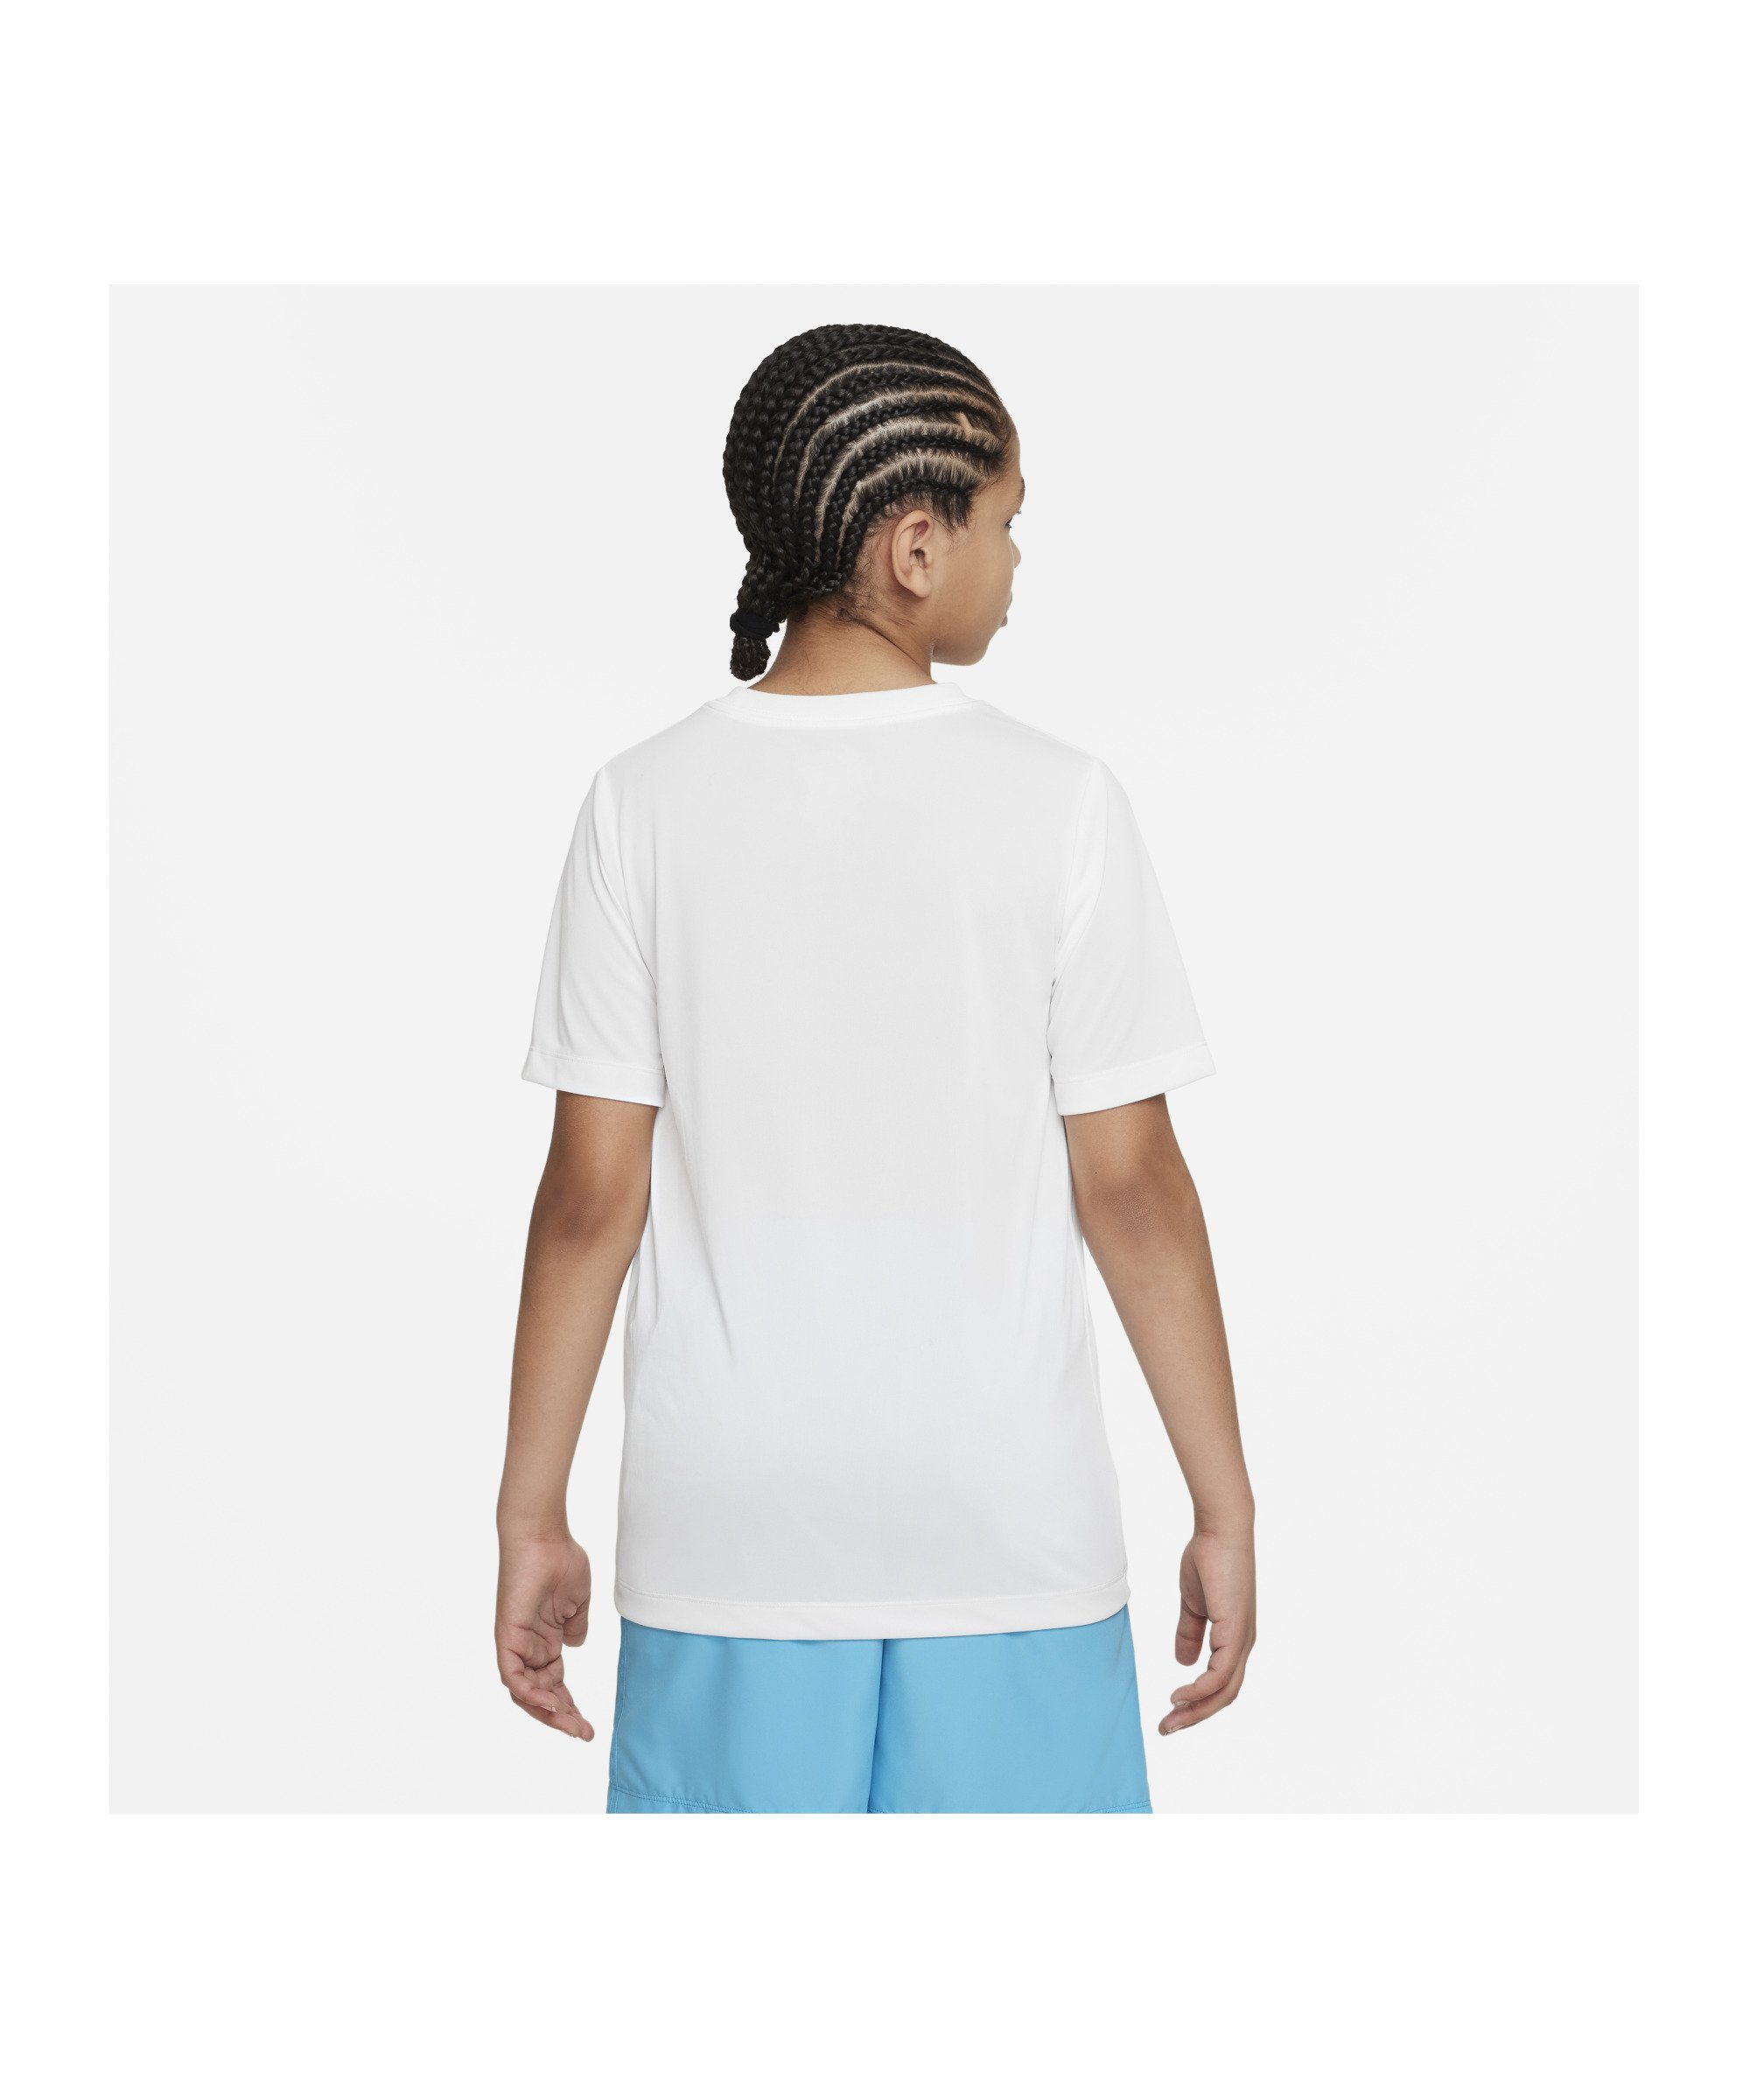 Nike T-Shirt Training default weiss Kids Laufshirt